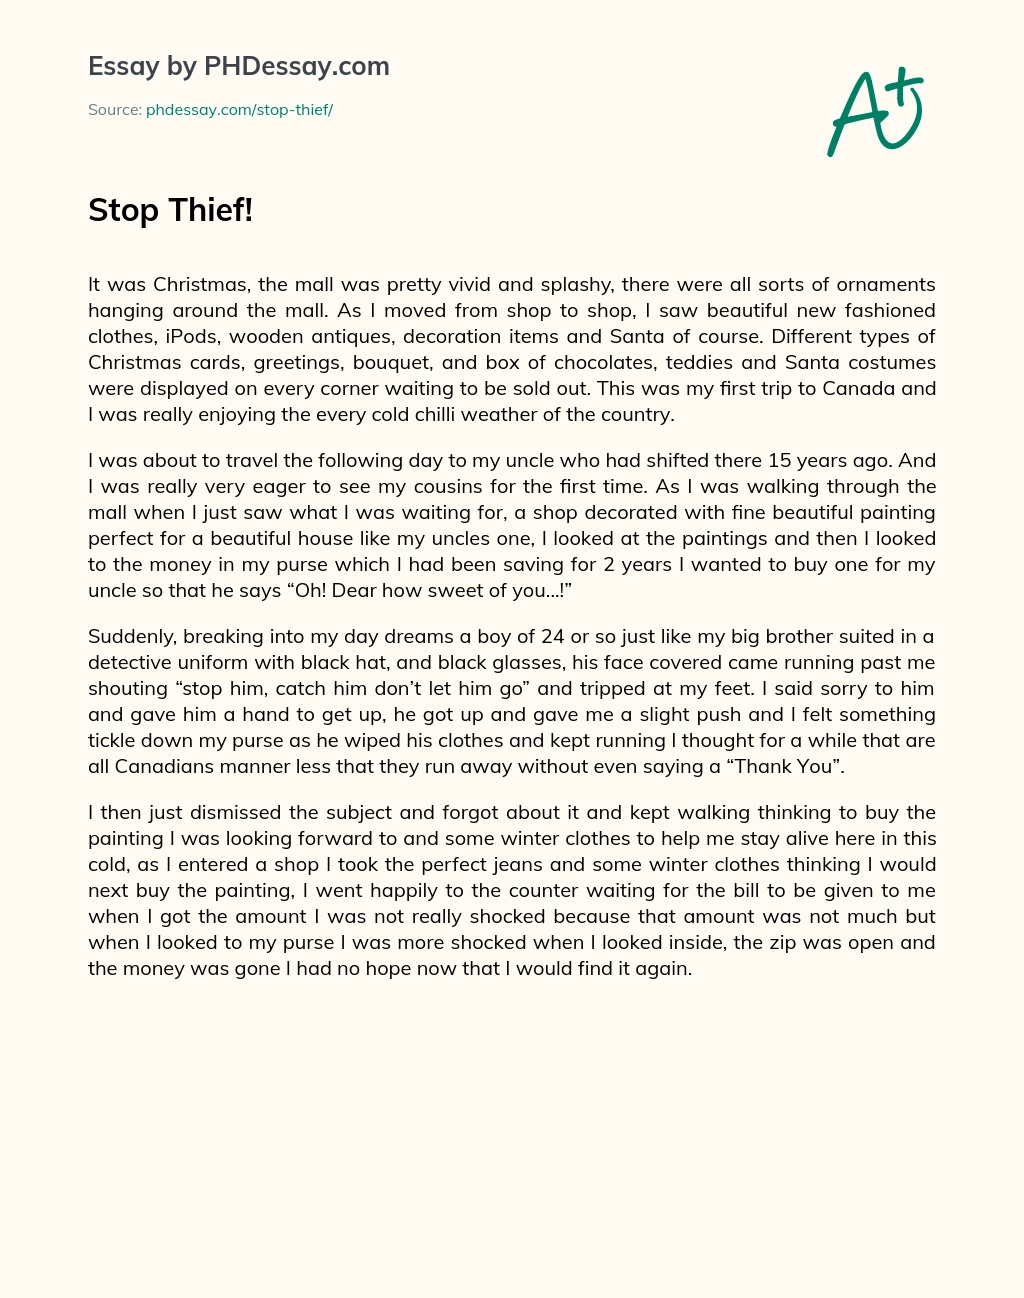 Stop Thief! essay